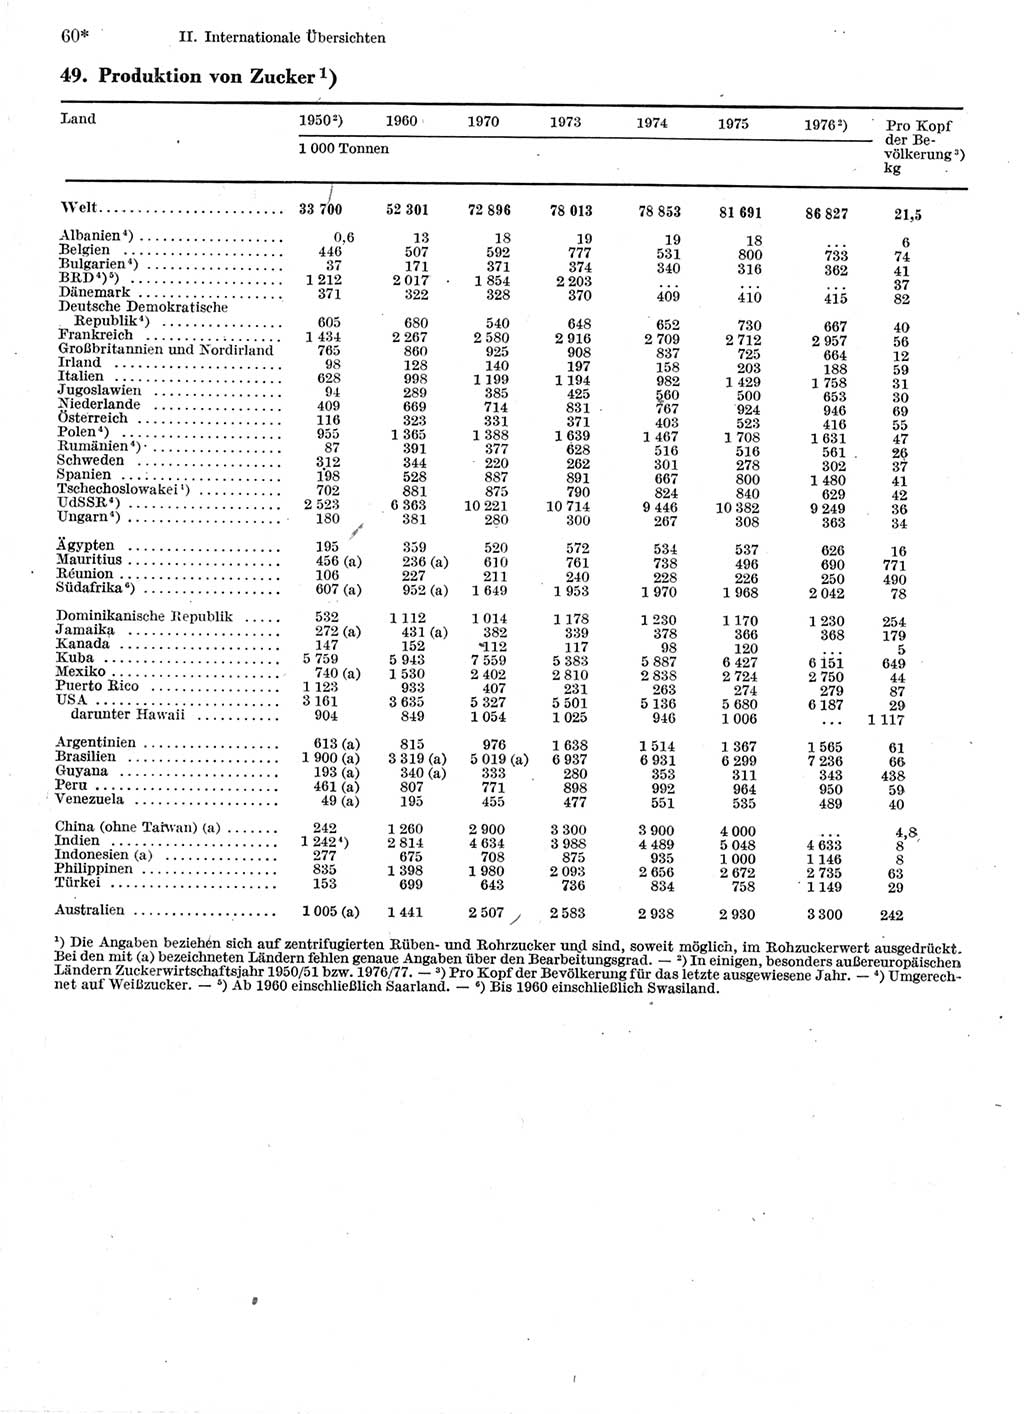 Statistisches Jahrbuch der Deutschen Demokratischen Republik (DDR) 1978, Seite 60 (Stat. Jb. DDR 1978, S. 60)